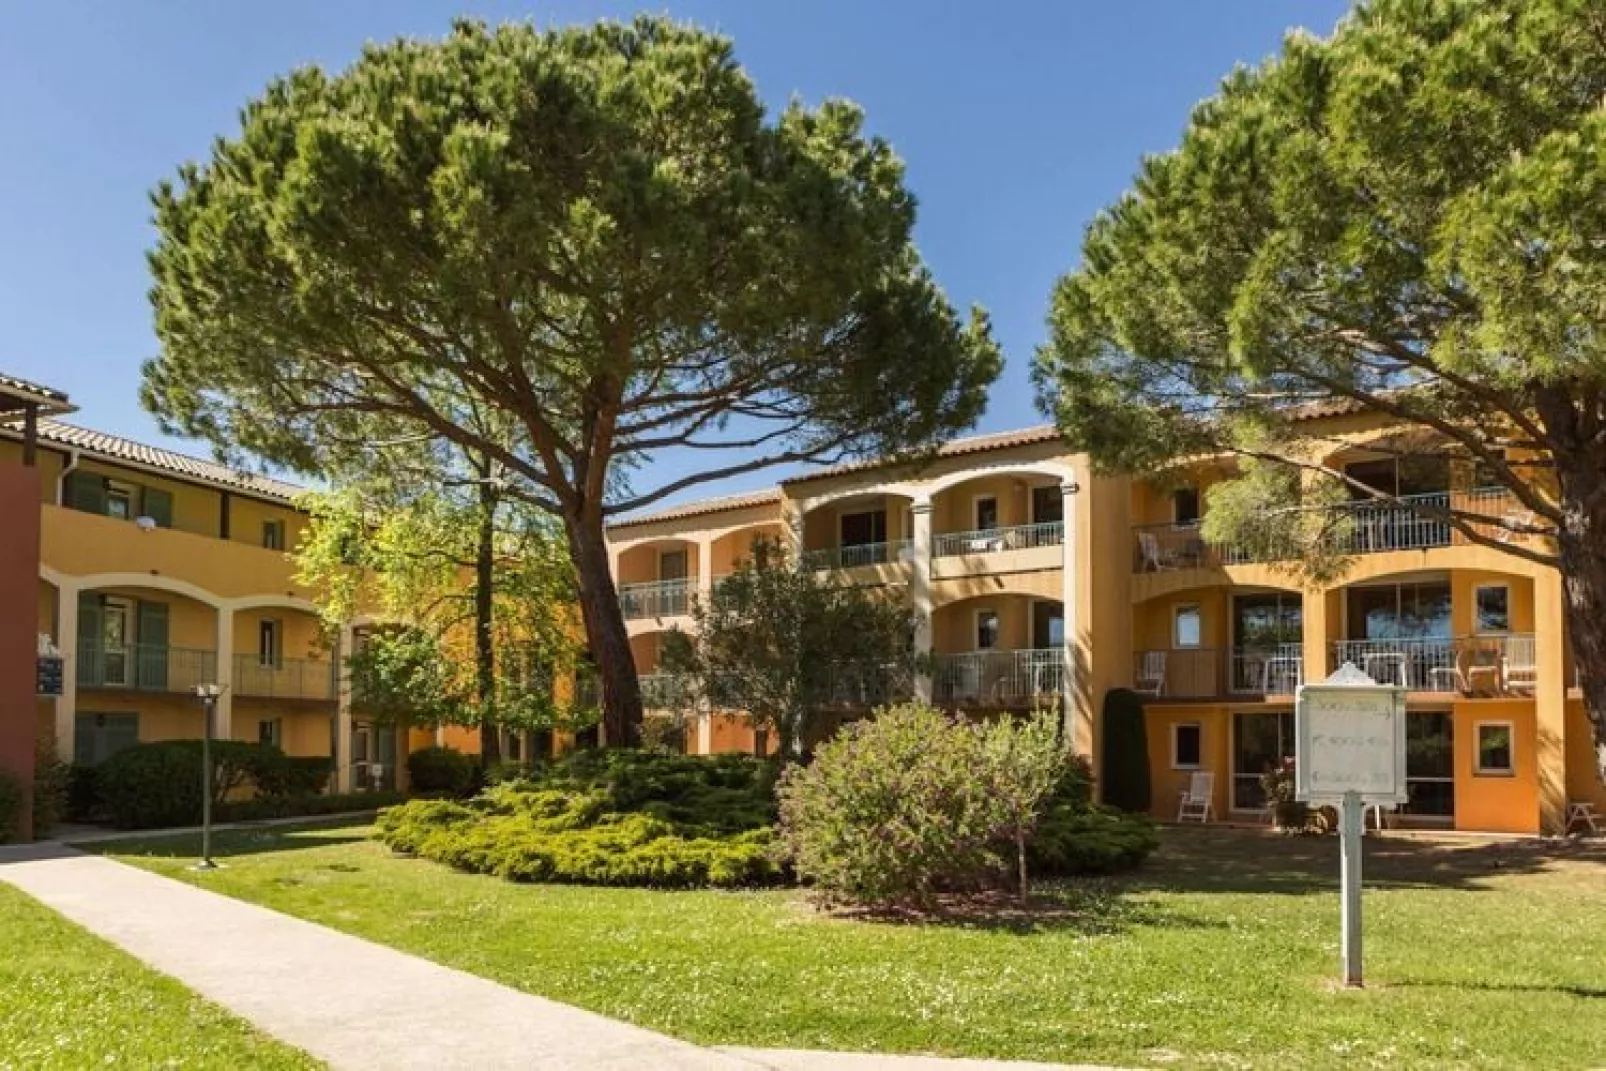 Residence Les Rives de Cannes Mandelieu Mandelieu-la-Napoule - 25 Standard - Apt 5 p - 1 bedroom-Buitenkant zomer